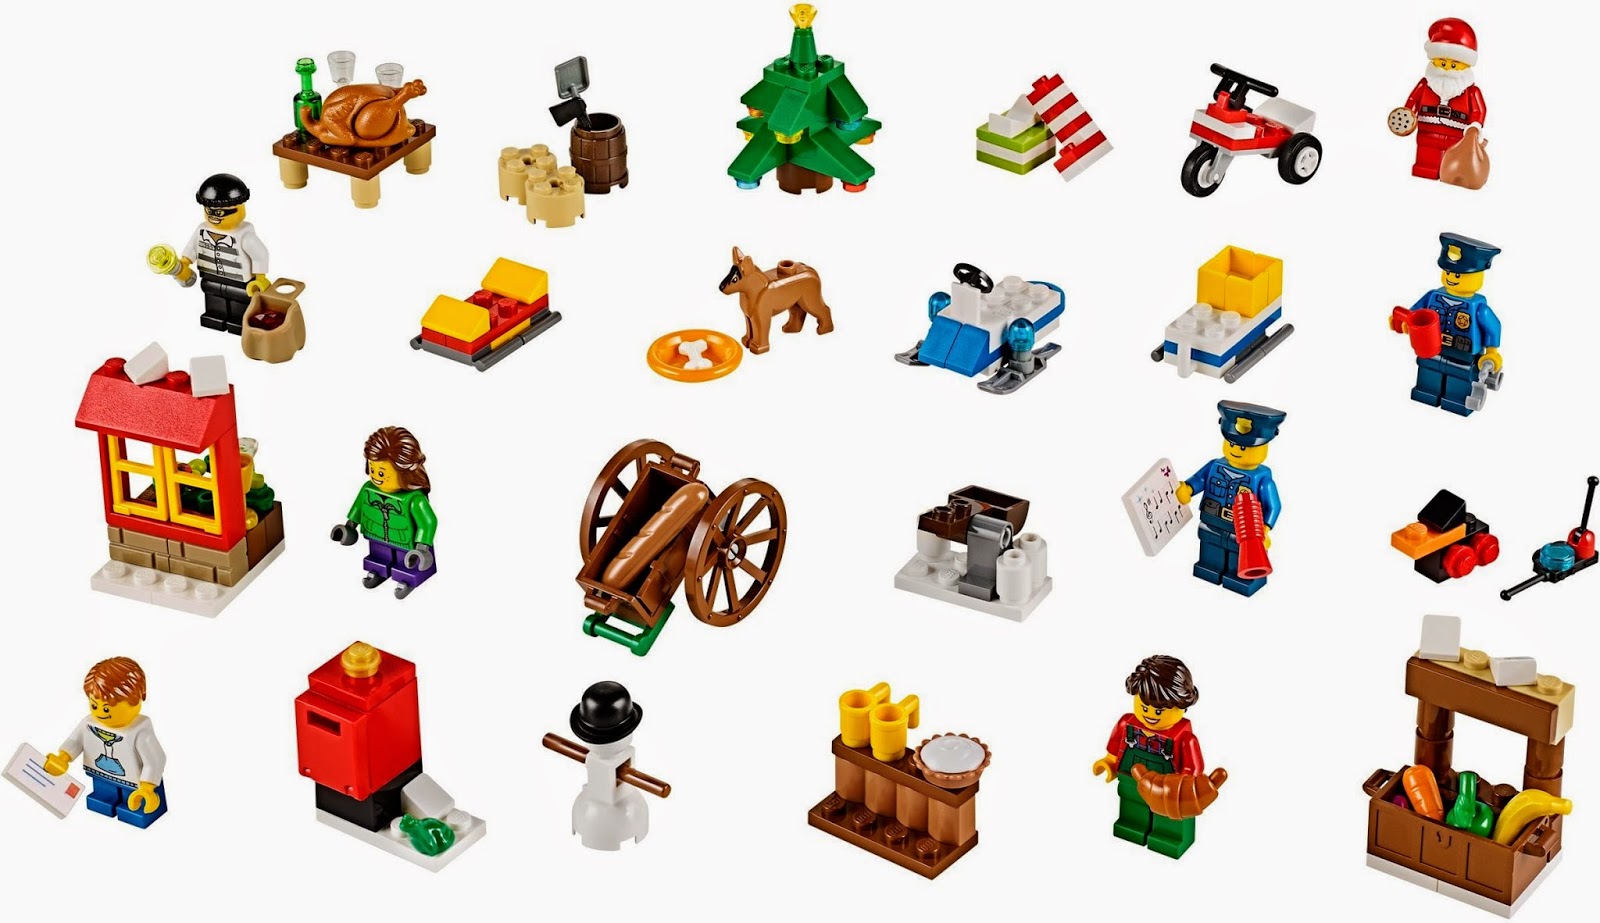 Lego City Advent Calendar 2014